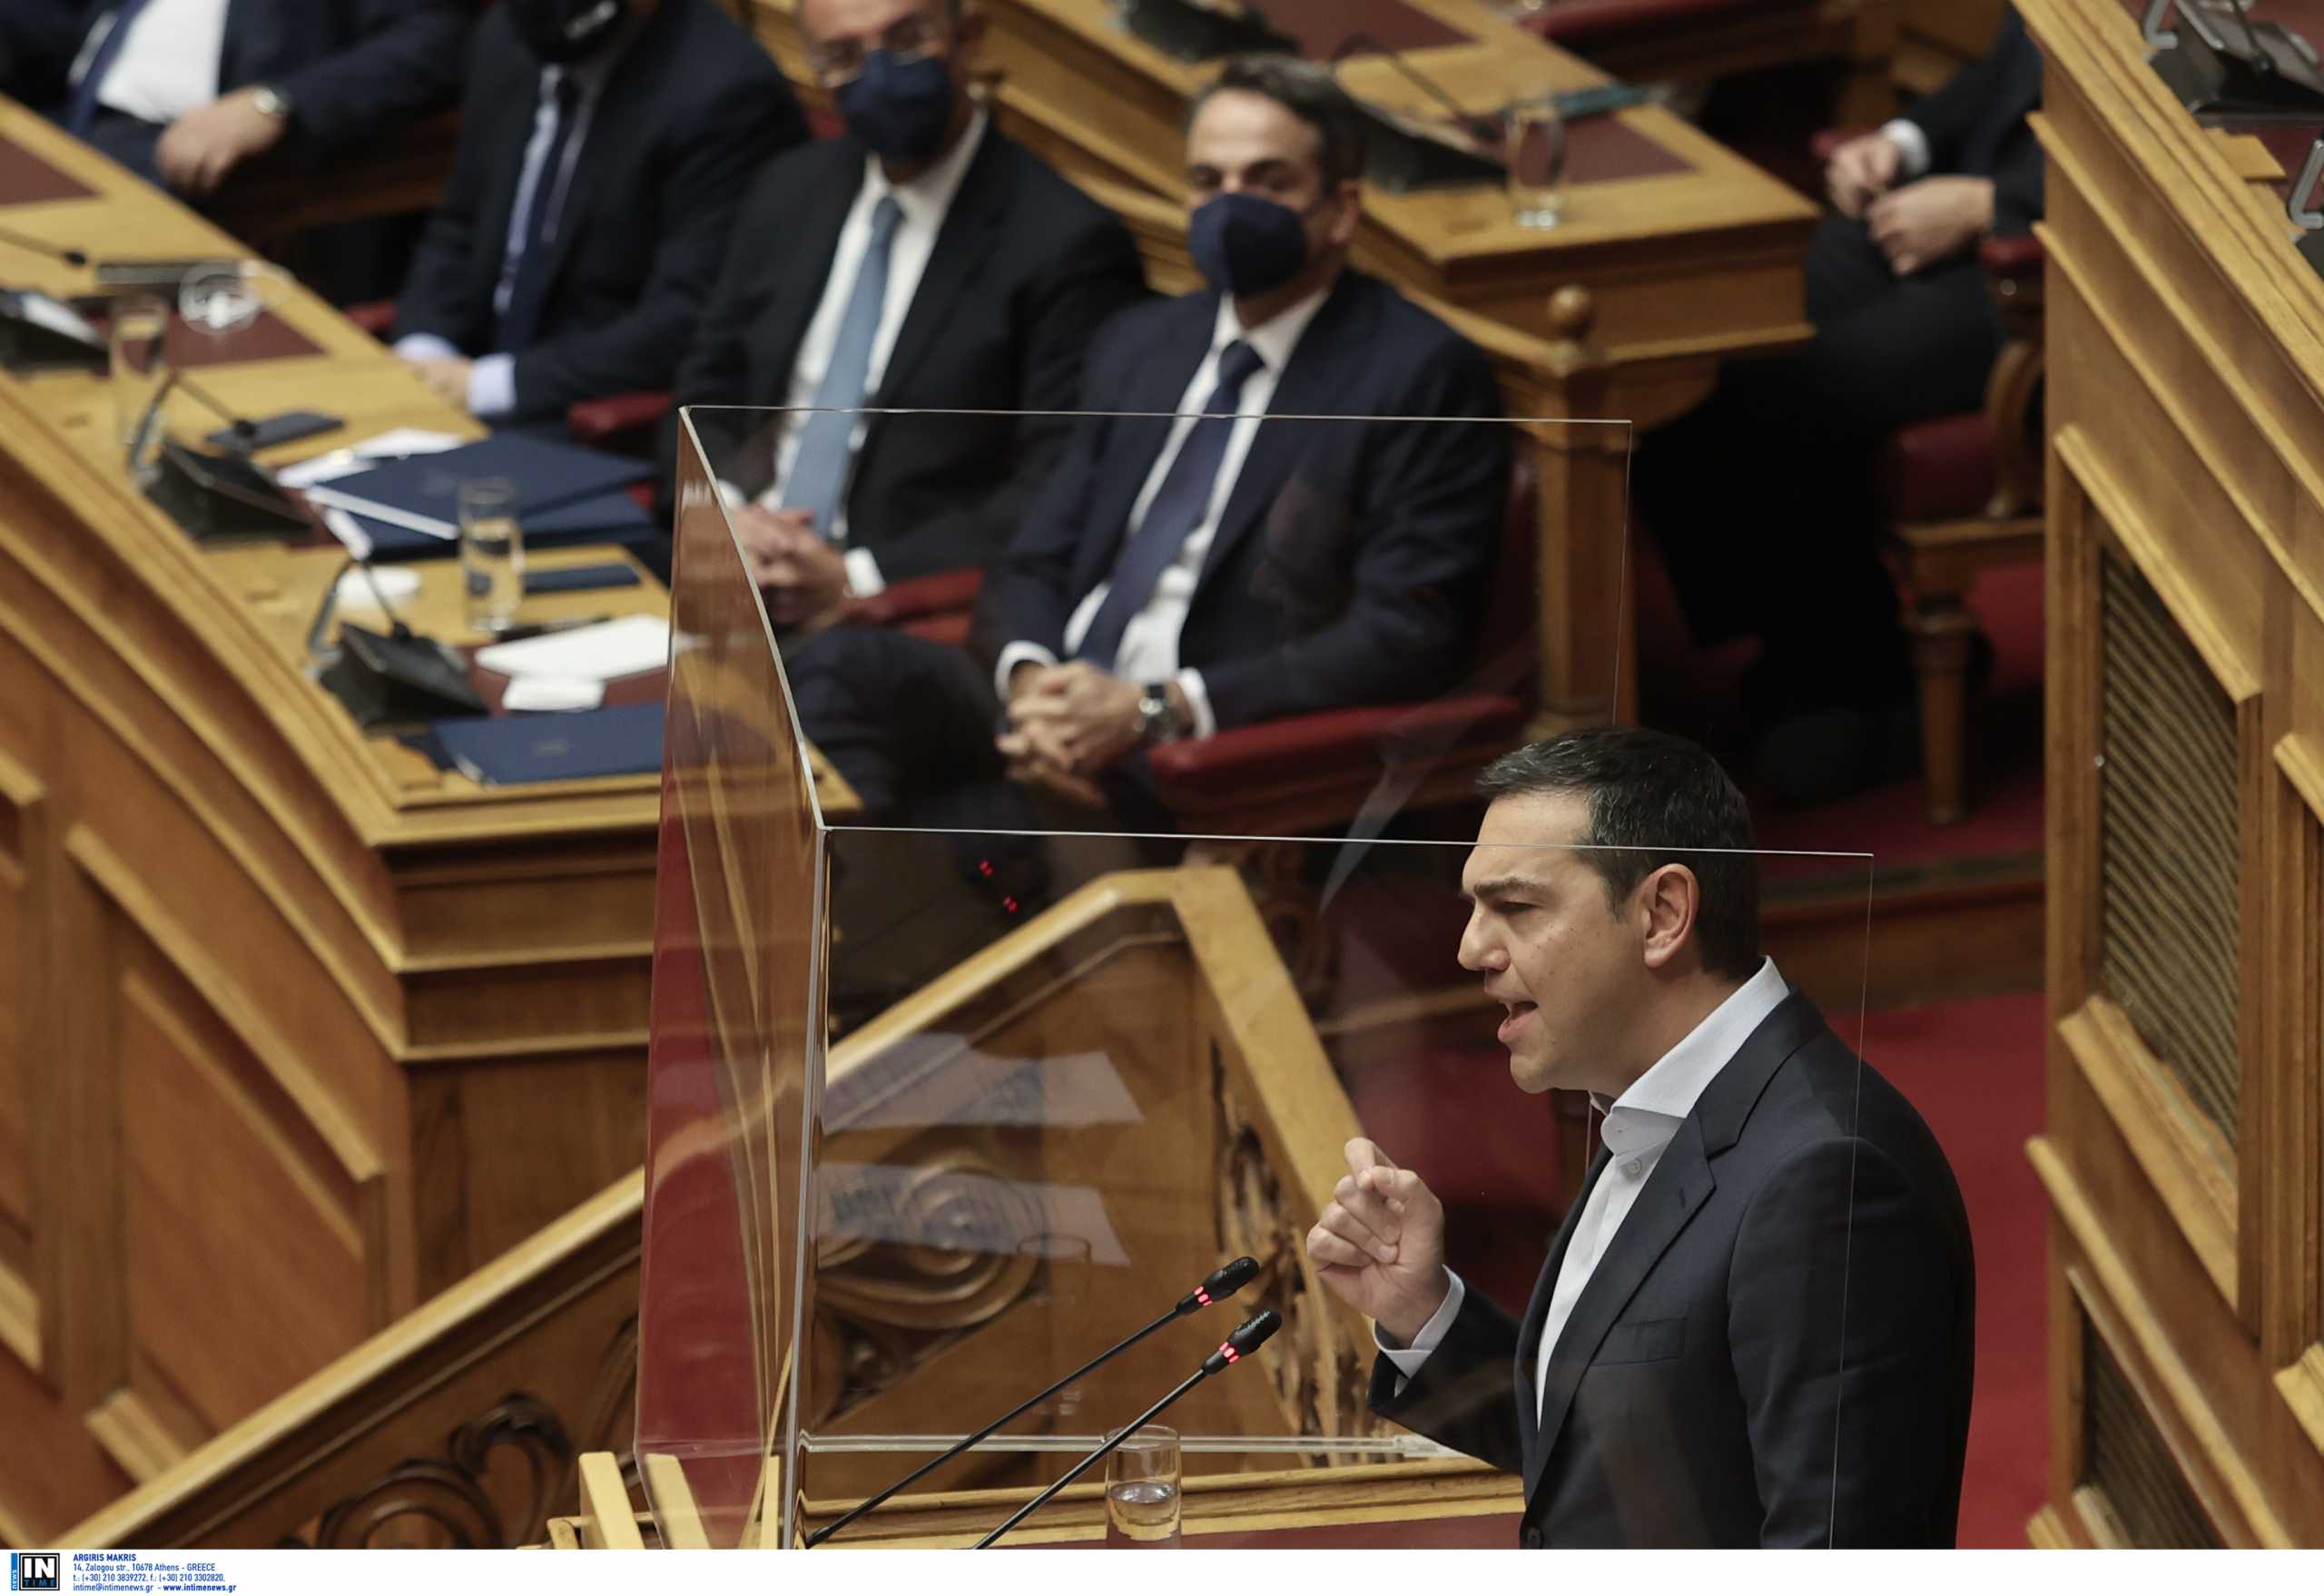 ΣΥΡΙΖΑ για πρόταση μορφής: Κοινοβουλευτικά αποδυναμωμένος και χωρίς απαντήσεις για τον χρόνο των εκλογών ο Μητσοτάκης